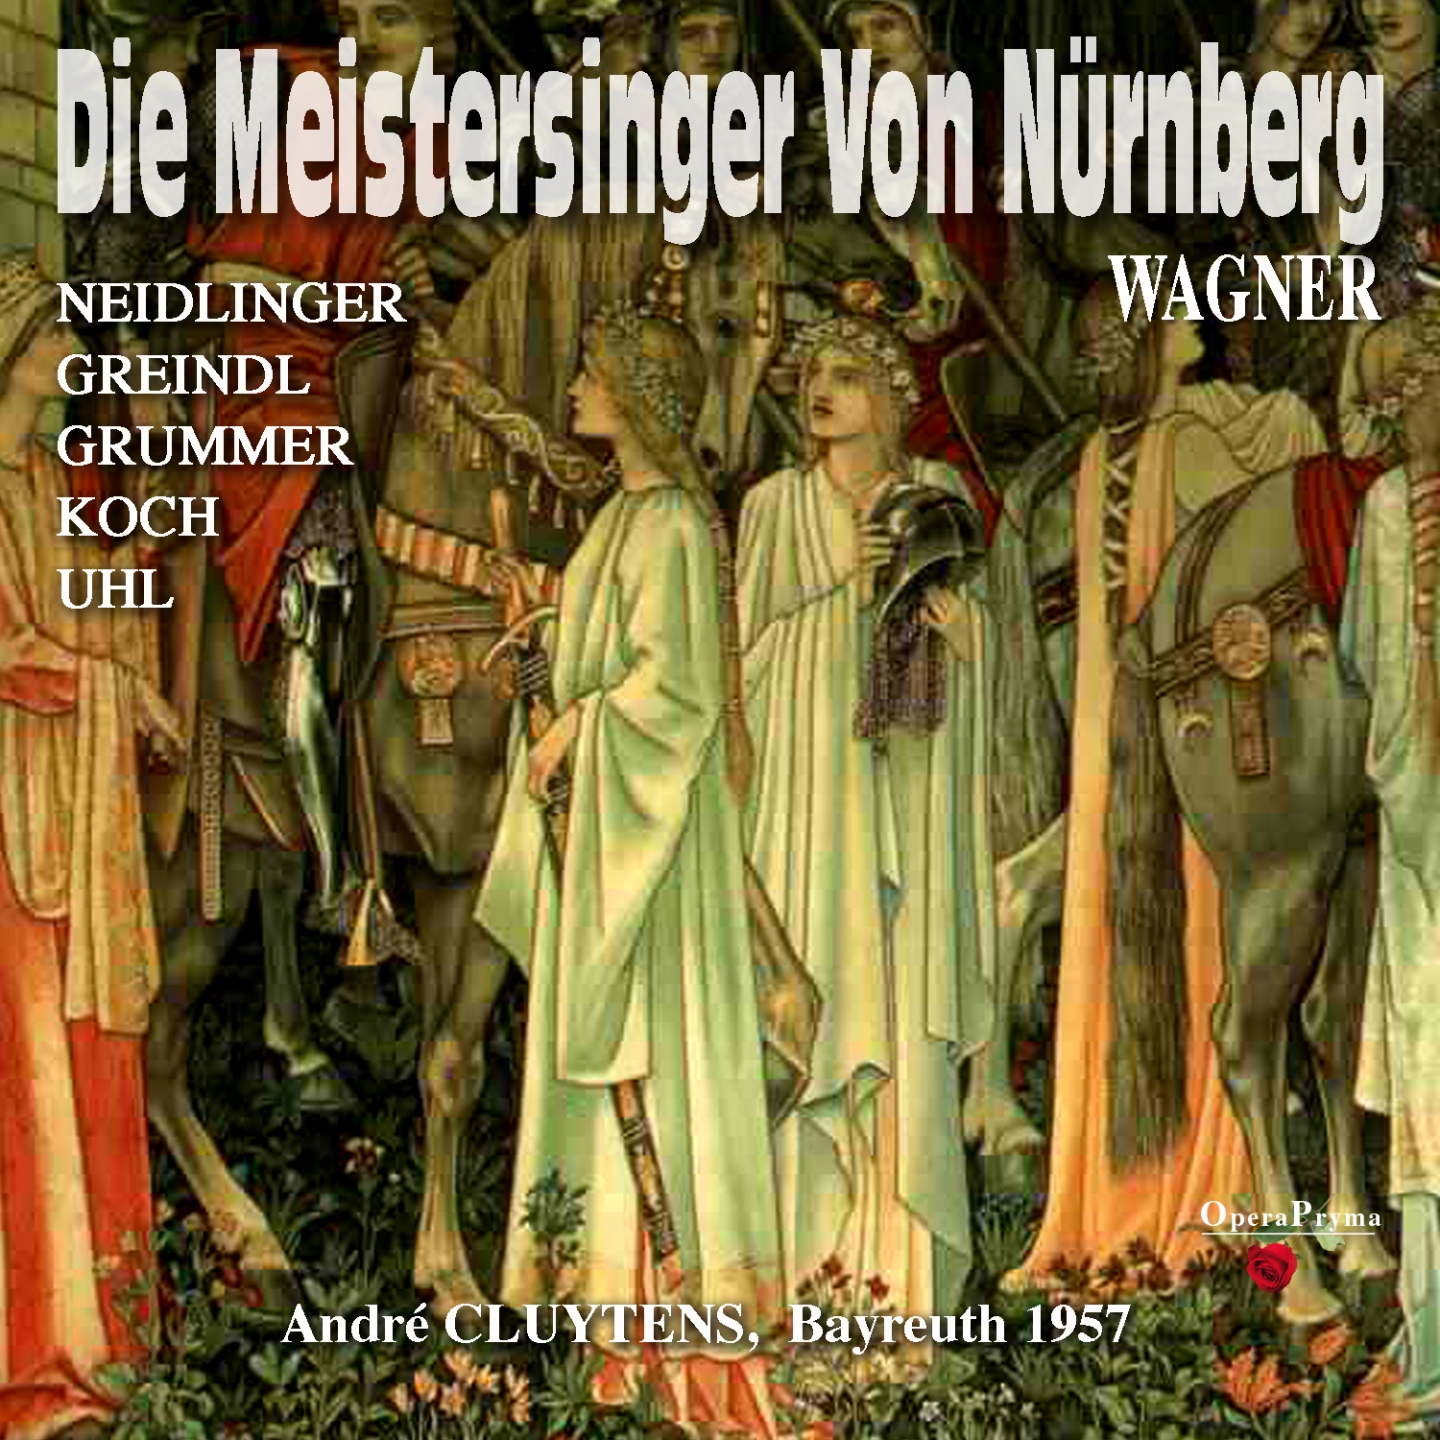 Die Meistersinger von Nü rnberg, Act I: " Verweilt! Ein Wort! Ein einzig Wort!" Walther von Stolzing, Eva, Magdalene